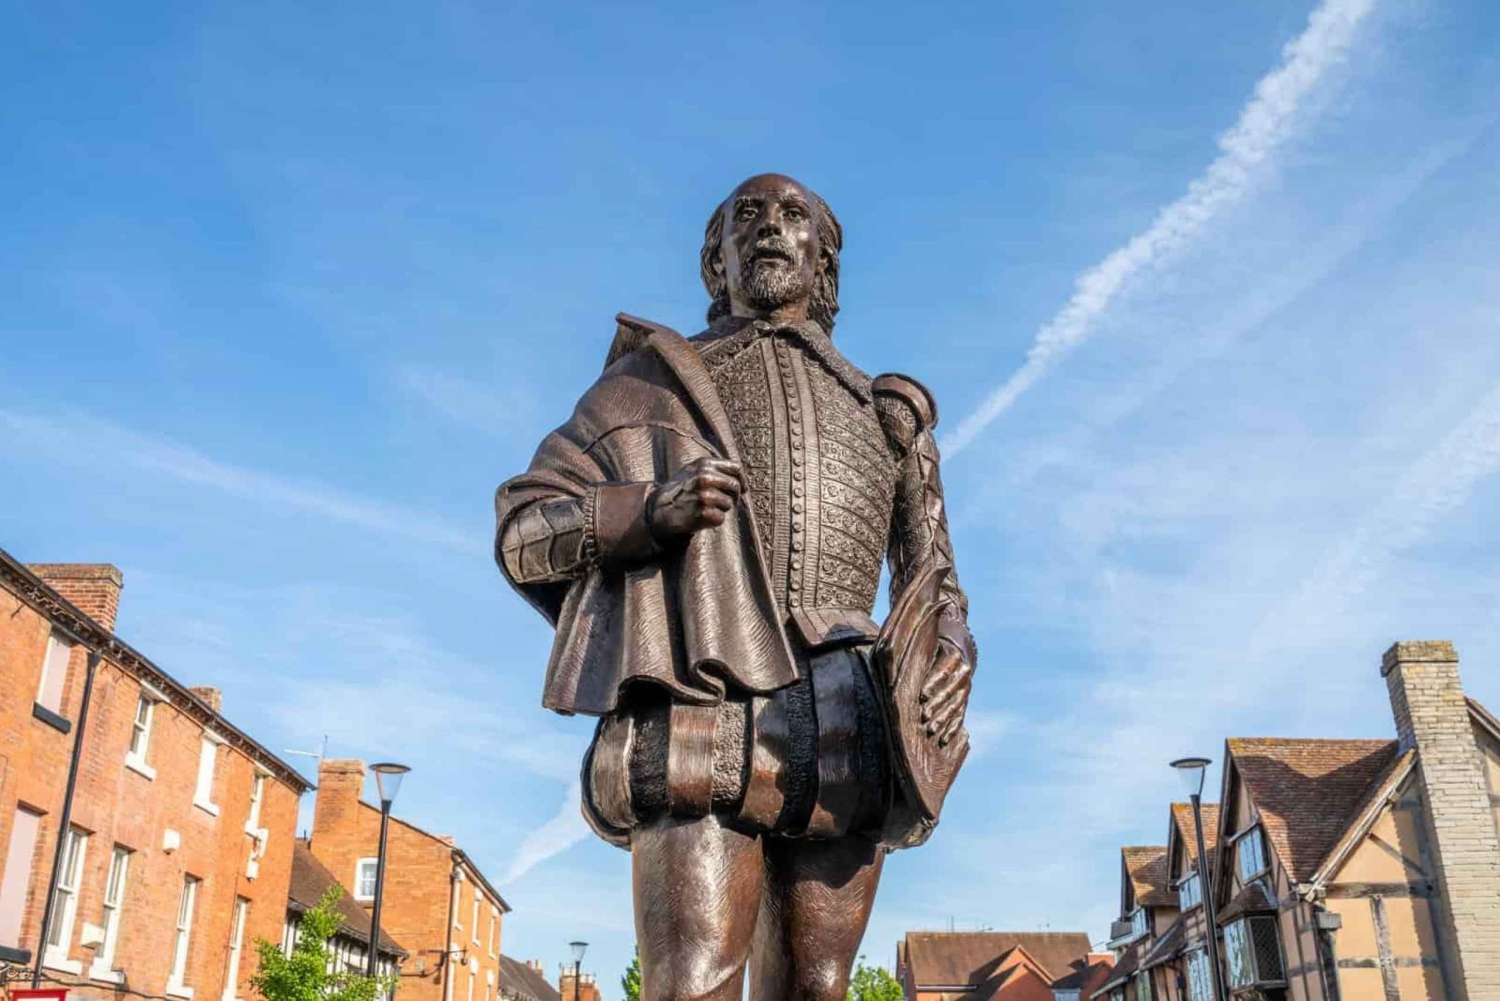 Starford-Upon-Avon: Historisk tur til Shakespeares fødested